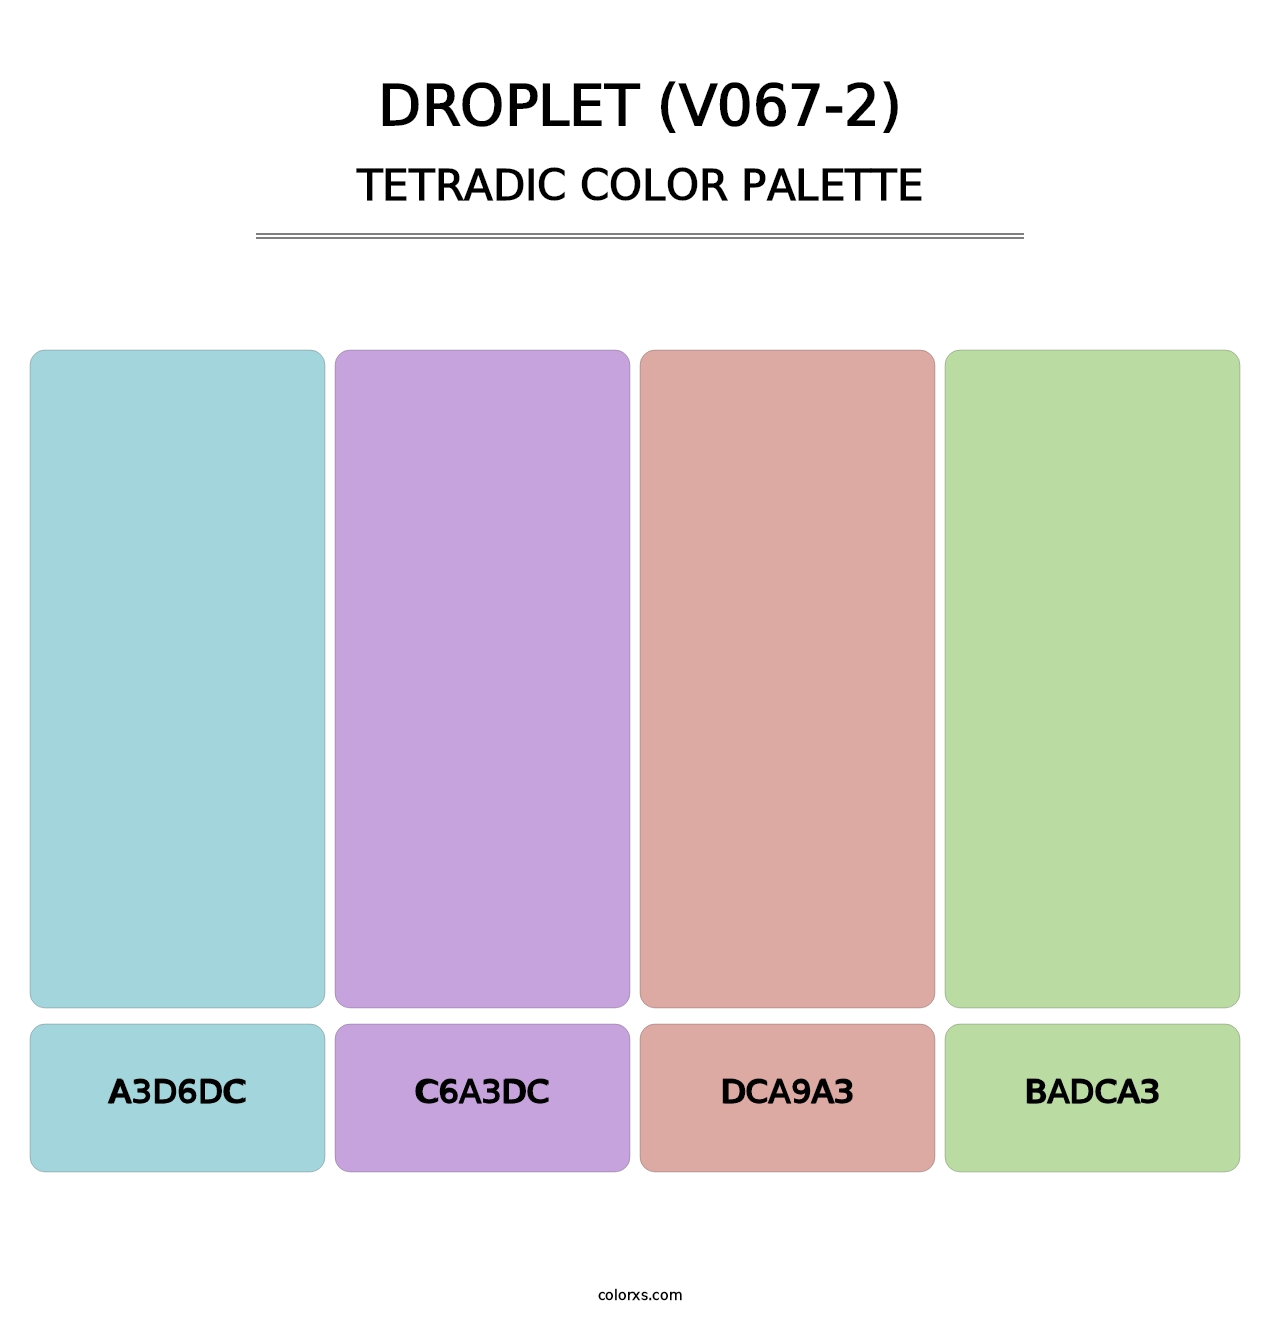 Droplet (V067-2) - Tetradic Color Palette